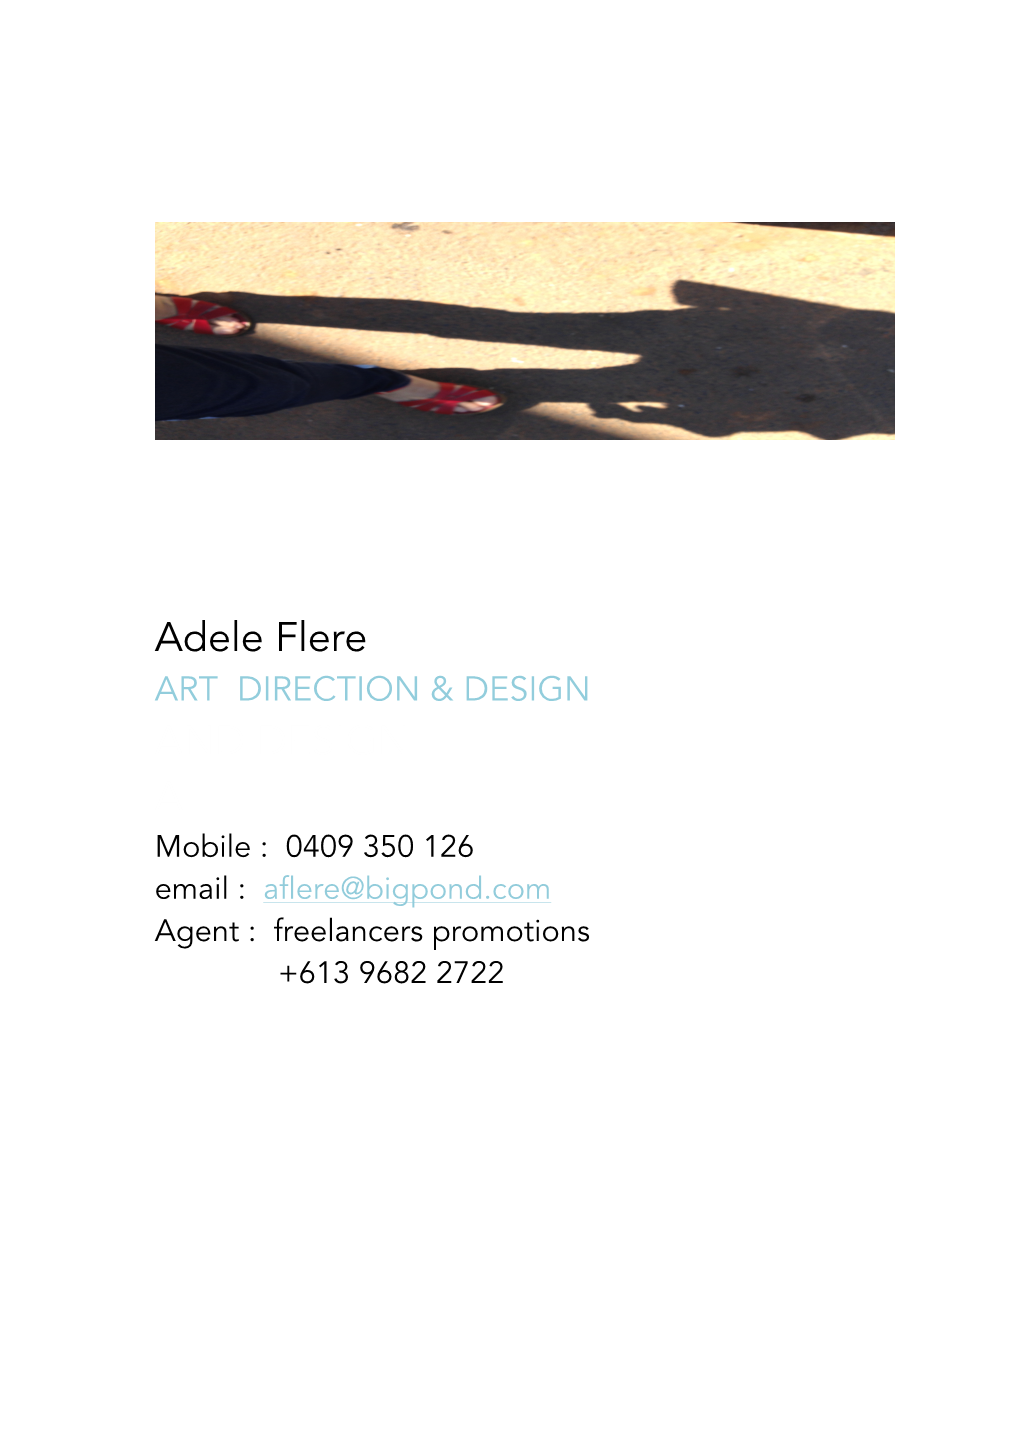 Adele Flere ART DIRECTION & DESIGN and DESIGN a Mobile : 0409 350 126 Email : Aflere@Bigpond.Com Agent : Freelancers Promotions +613 9682 2722